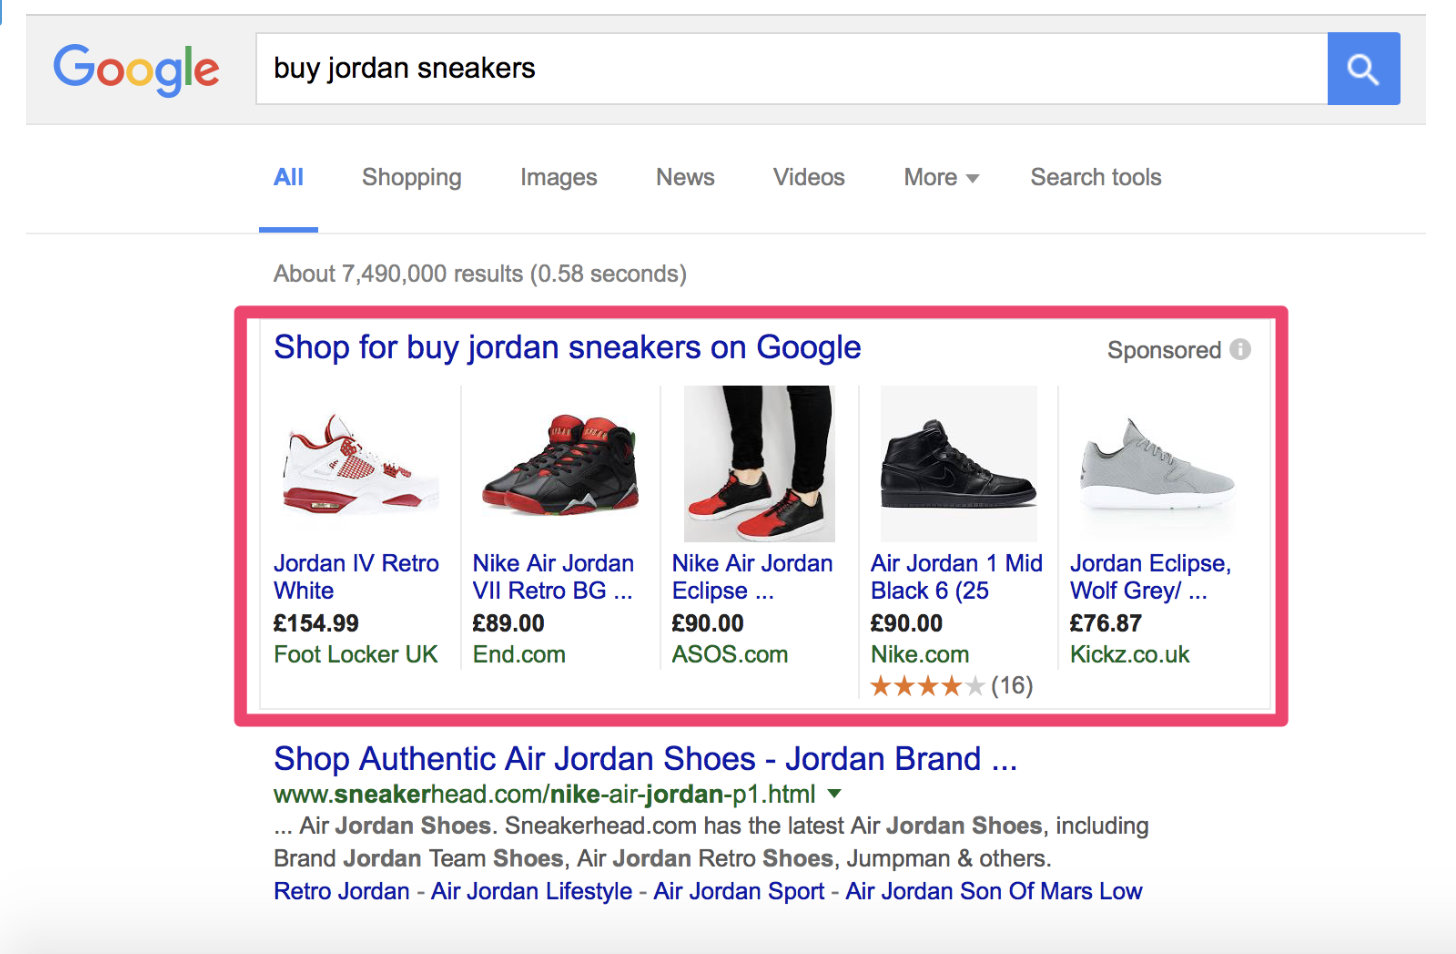 resultado de pesquisas no google shopping